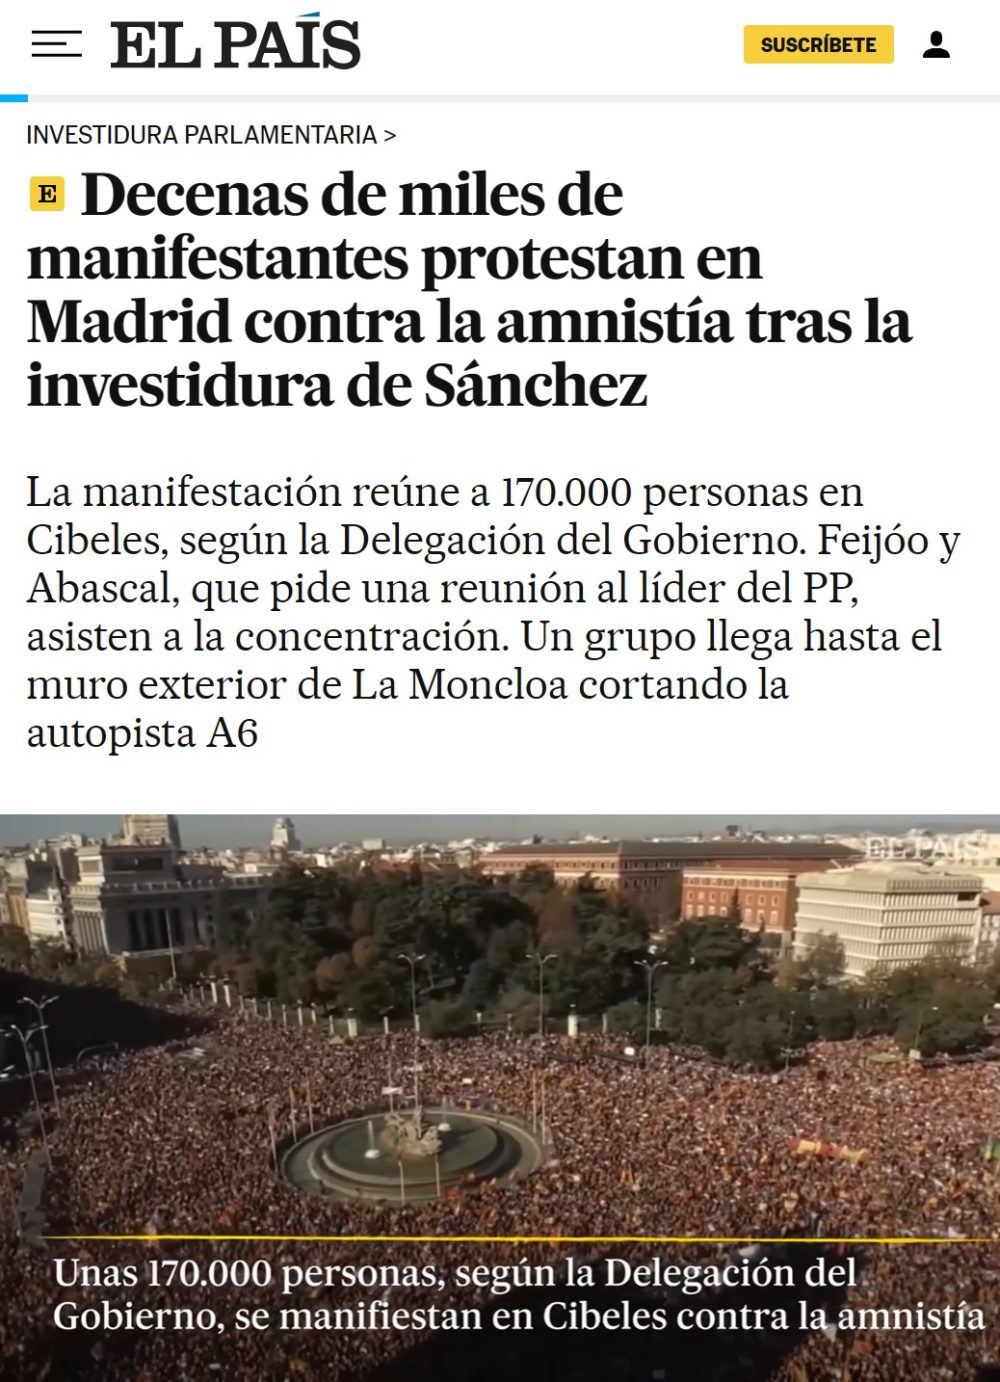 El País está tan confuso que se dañó a sí mismo...